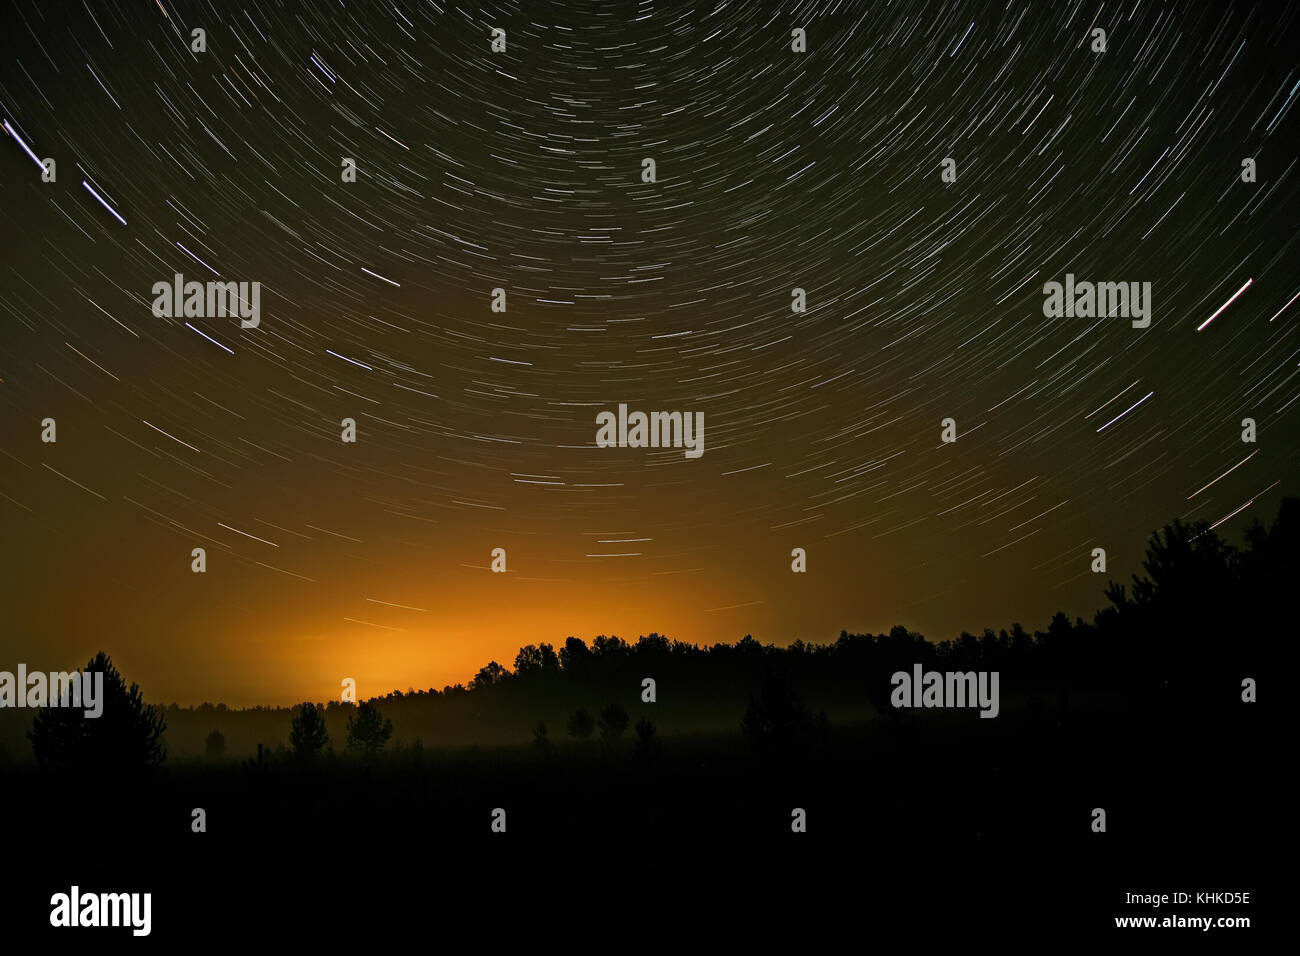 Nacht Landschaft mit Spuren von den Sternen am Nachthimmel auf dem Hintergrund eines dunklen Wald, Felder und Nebel Stockfoto